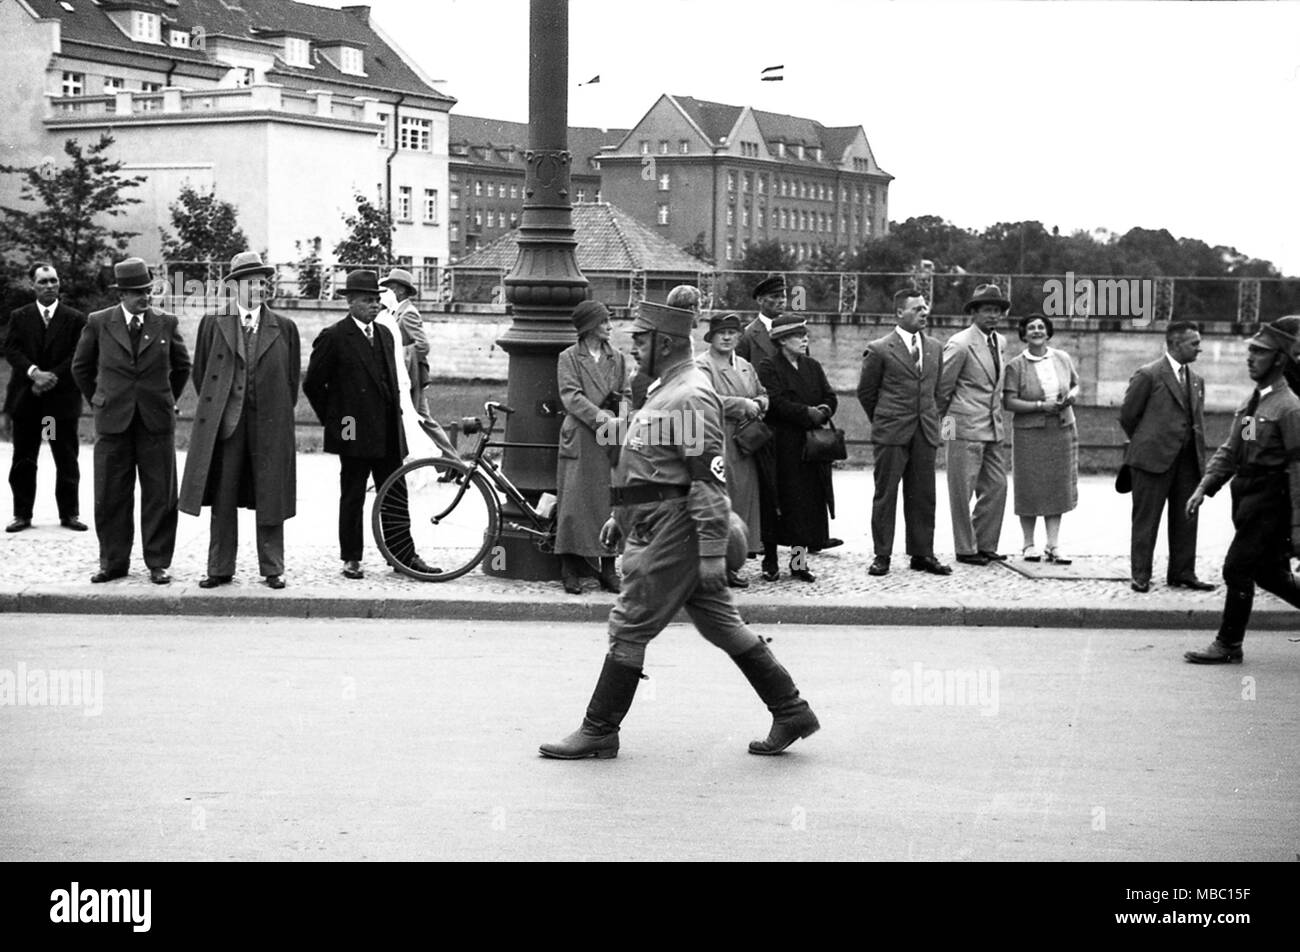 Également appelé Sturmabteilung stormtoopers Brownshirts et portant des drapeaux à croix gammée en 1934 alors qu'ils défilent dans Konigsberg en Allemagne. Konigsberg est devenu le territoire russe après la seconde guerre mondiale et a été rebaptisée Kaliningrad. Deutschland 1930 Banque D'Images